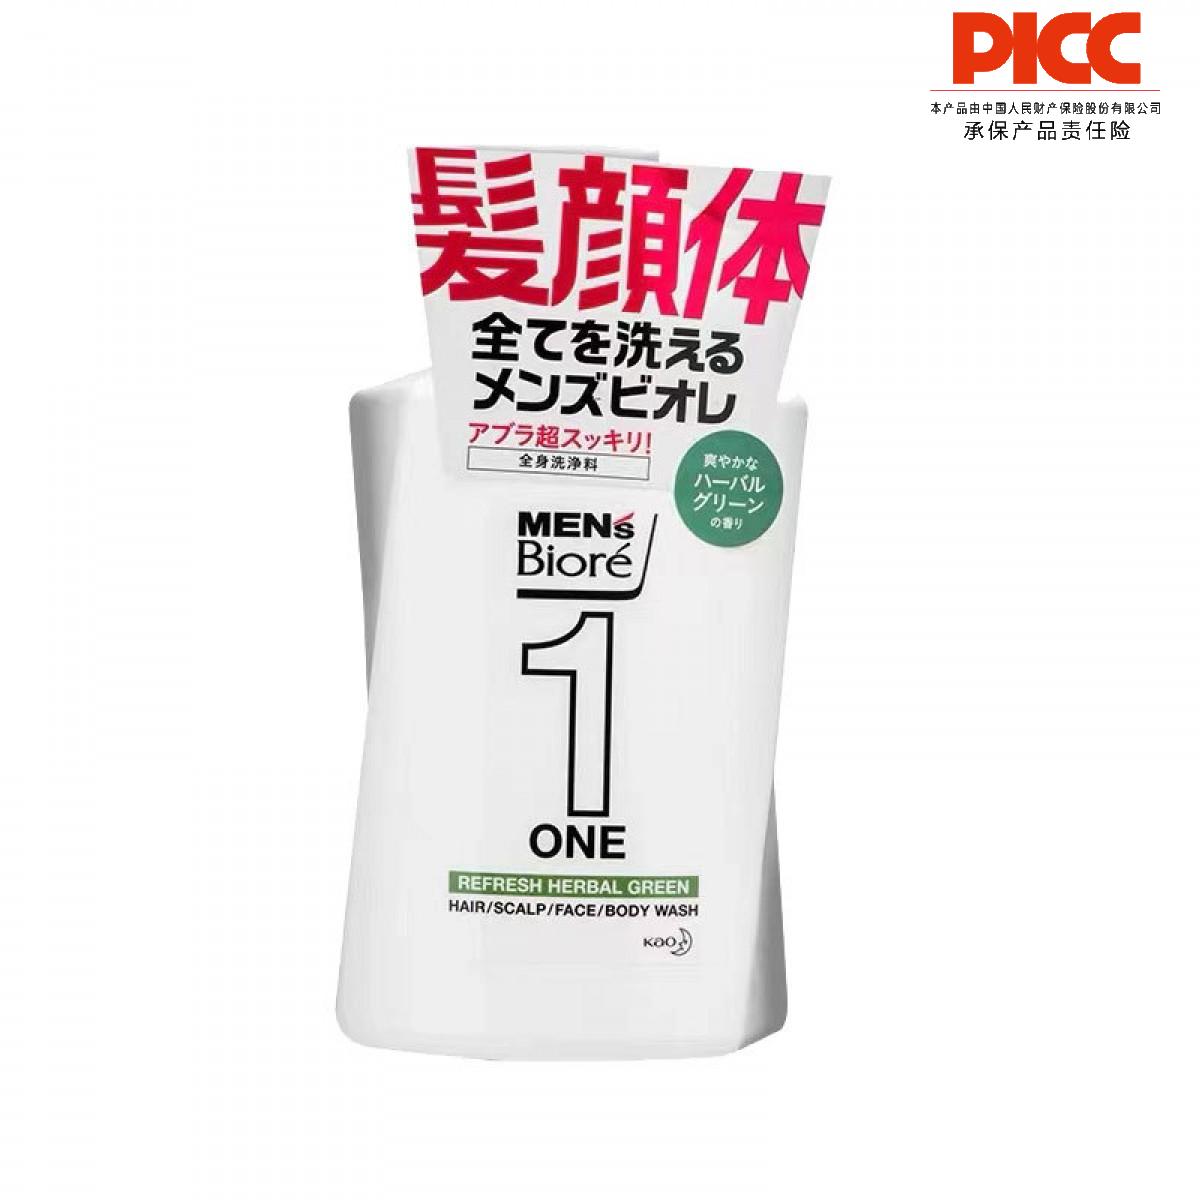 【保稅】日本Biore ONE多合一全身潔面乳草本綠色香480ml